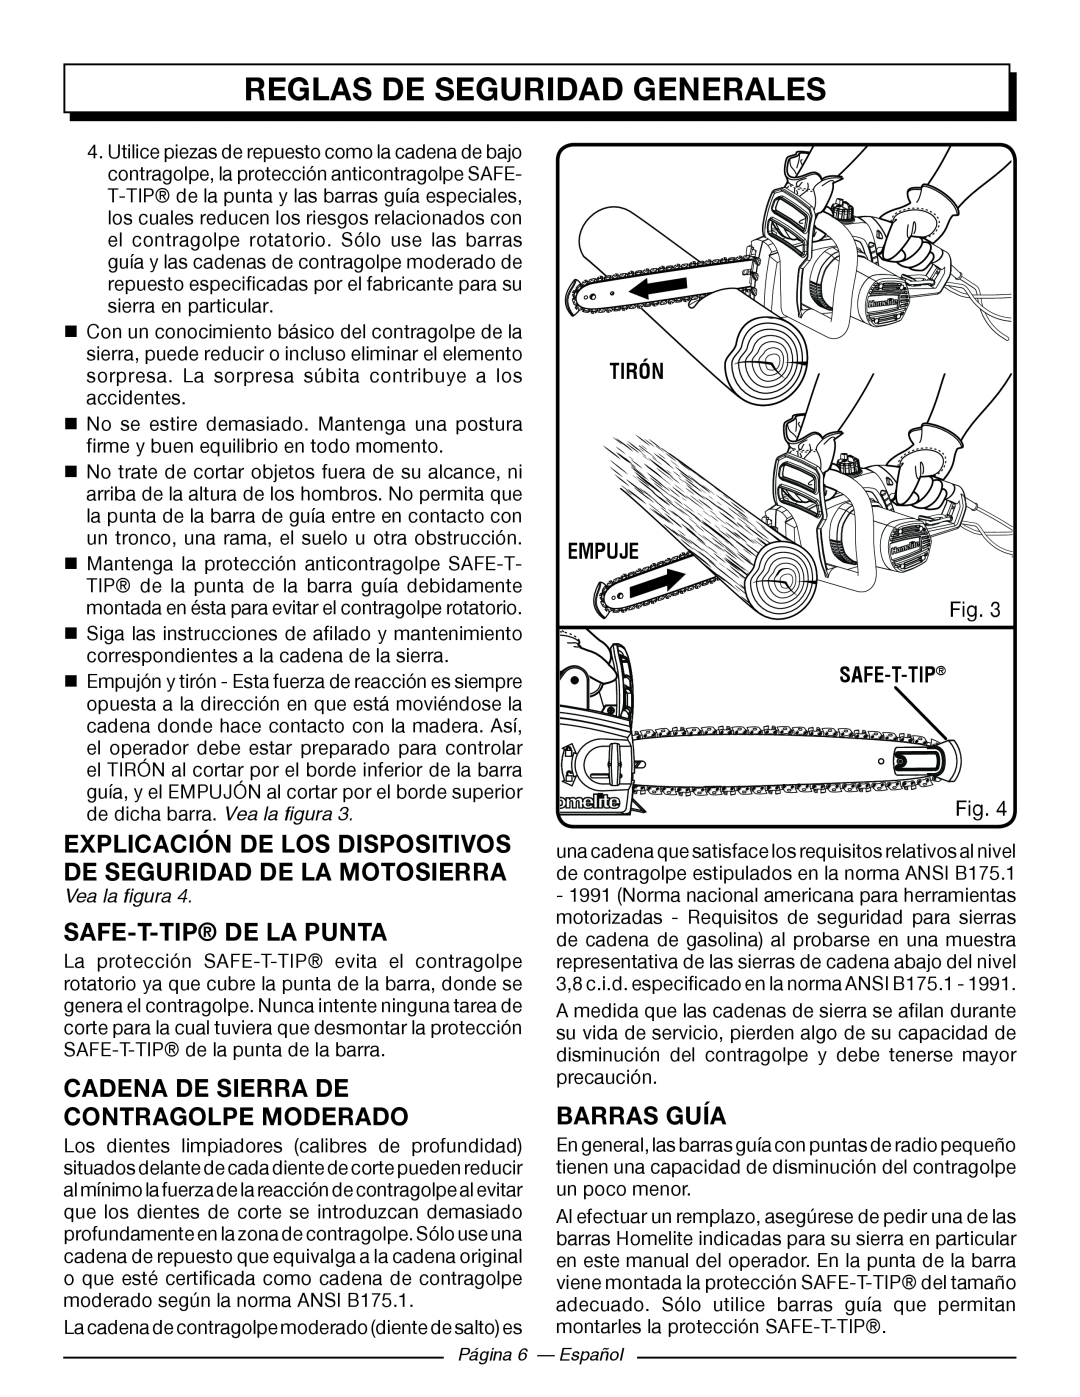 Homelite UT43122 Safe-T-Tip De La Punta, Barras Guía, Explicación De Los Dispositivos De Seguridad De La Motosierra 